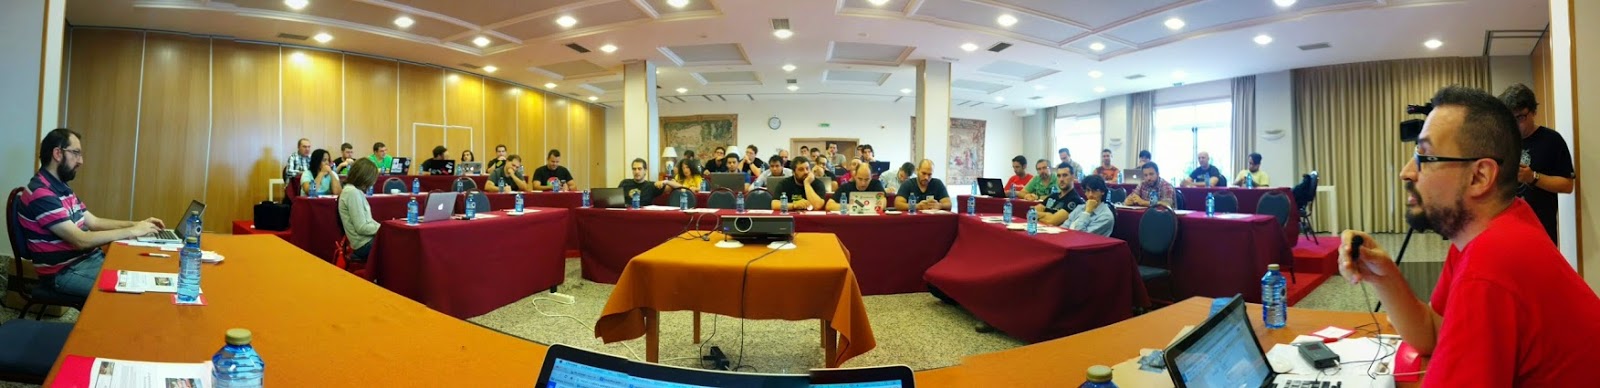 Presentando las becas de Google Summer of Code en el GDG Summit de GDG Spain @gsoc #gdg #event